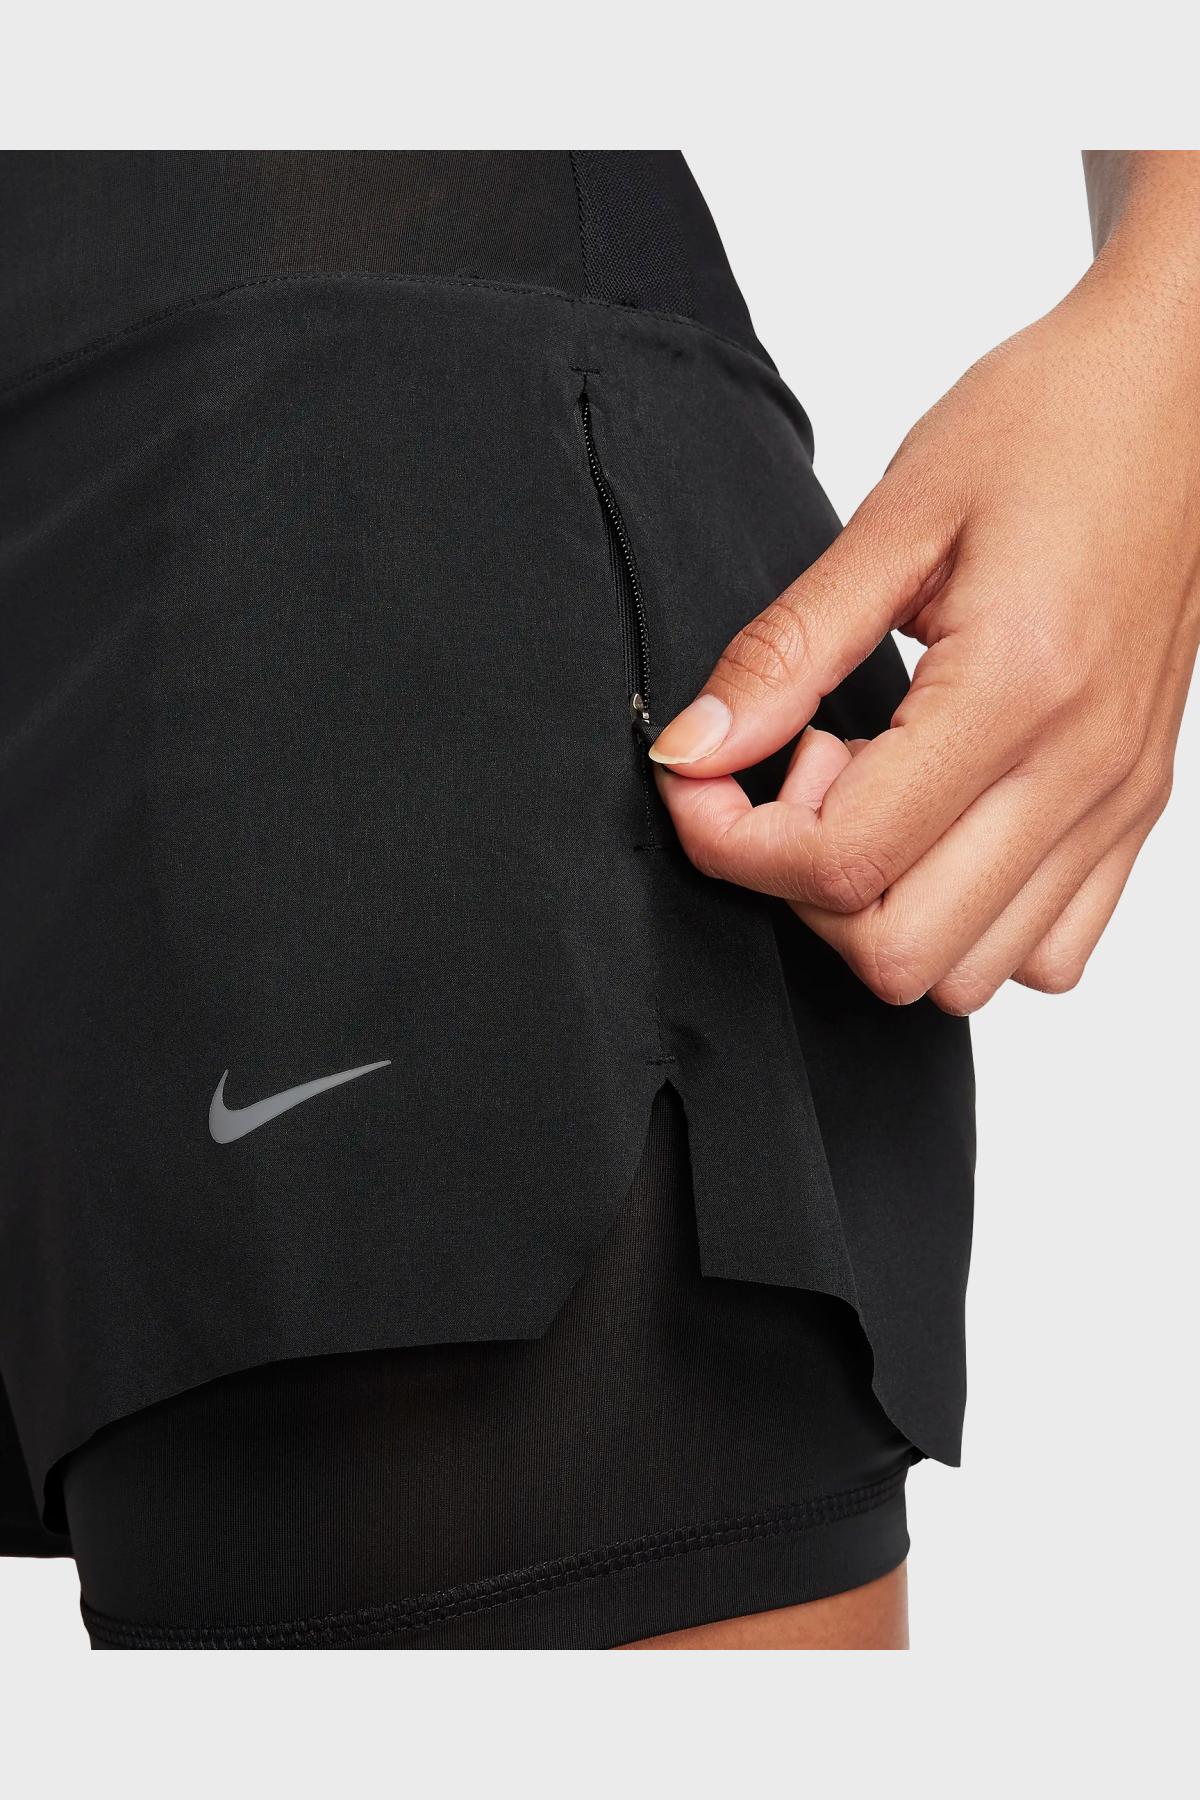 NIKE - W Nike DRI-FIT SWIFT Shorts 2 AND 1